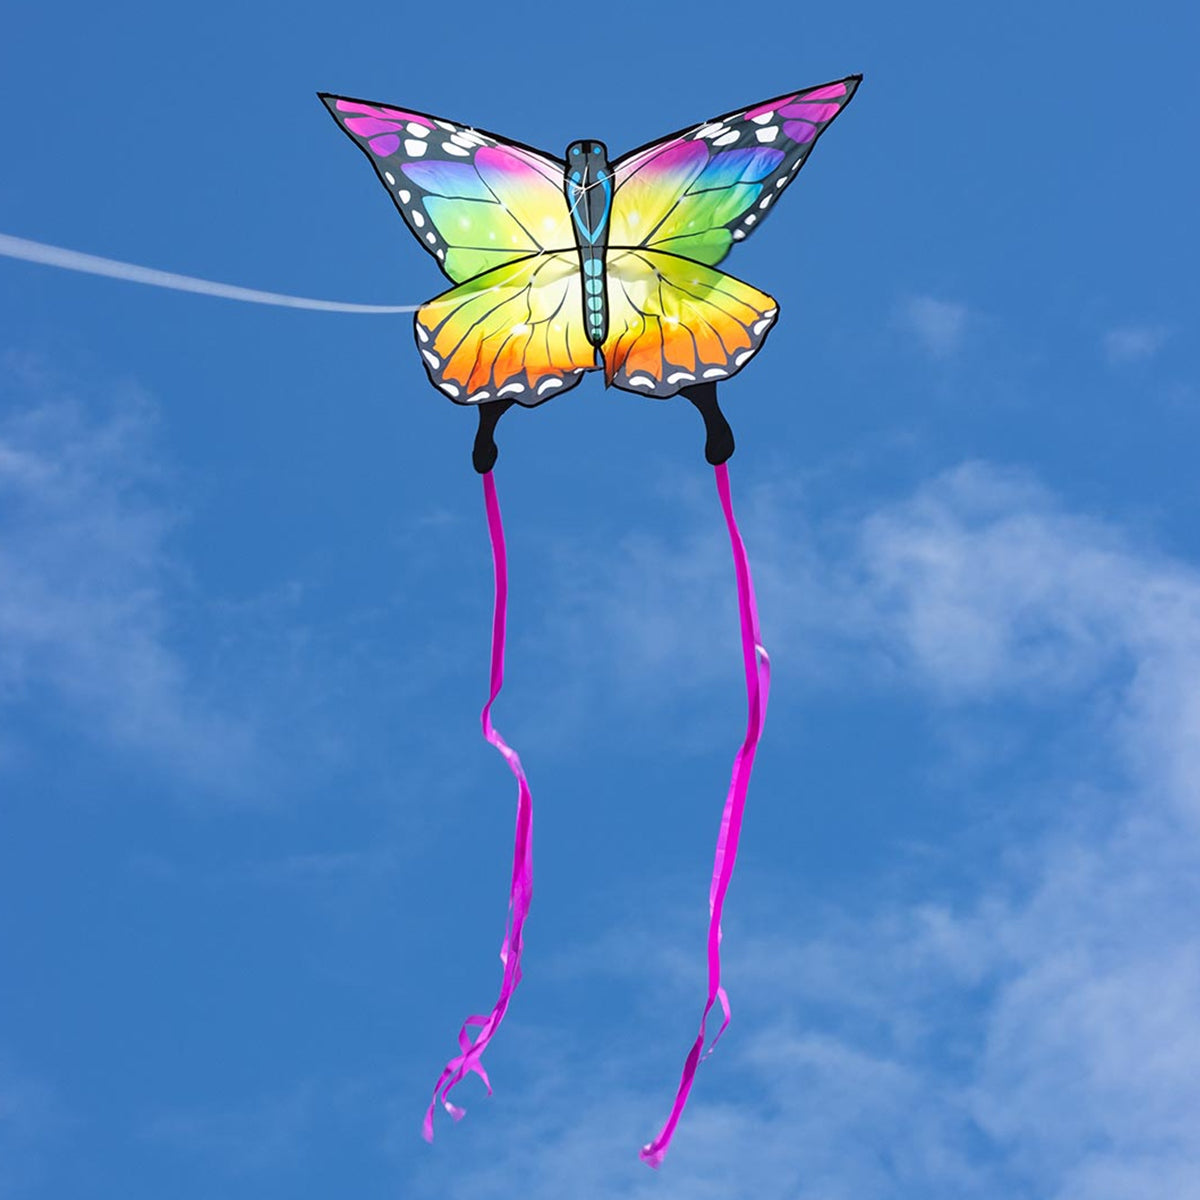 HQ Kinderdrachen Einleiner Drachen HQ Butterfly Kite Rainbow Schmetterling Flugdrache